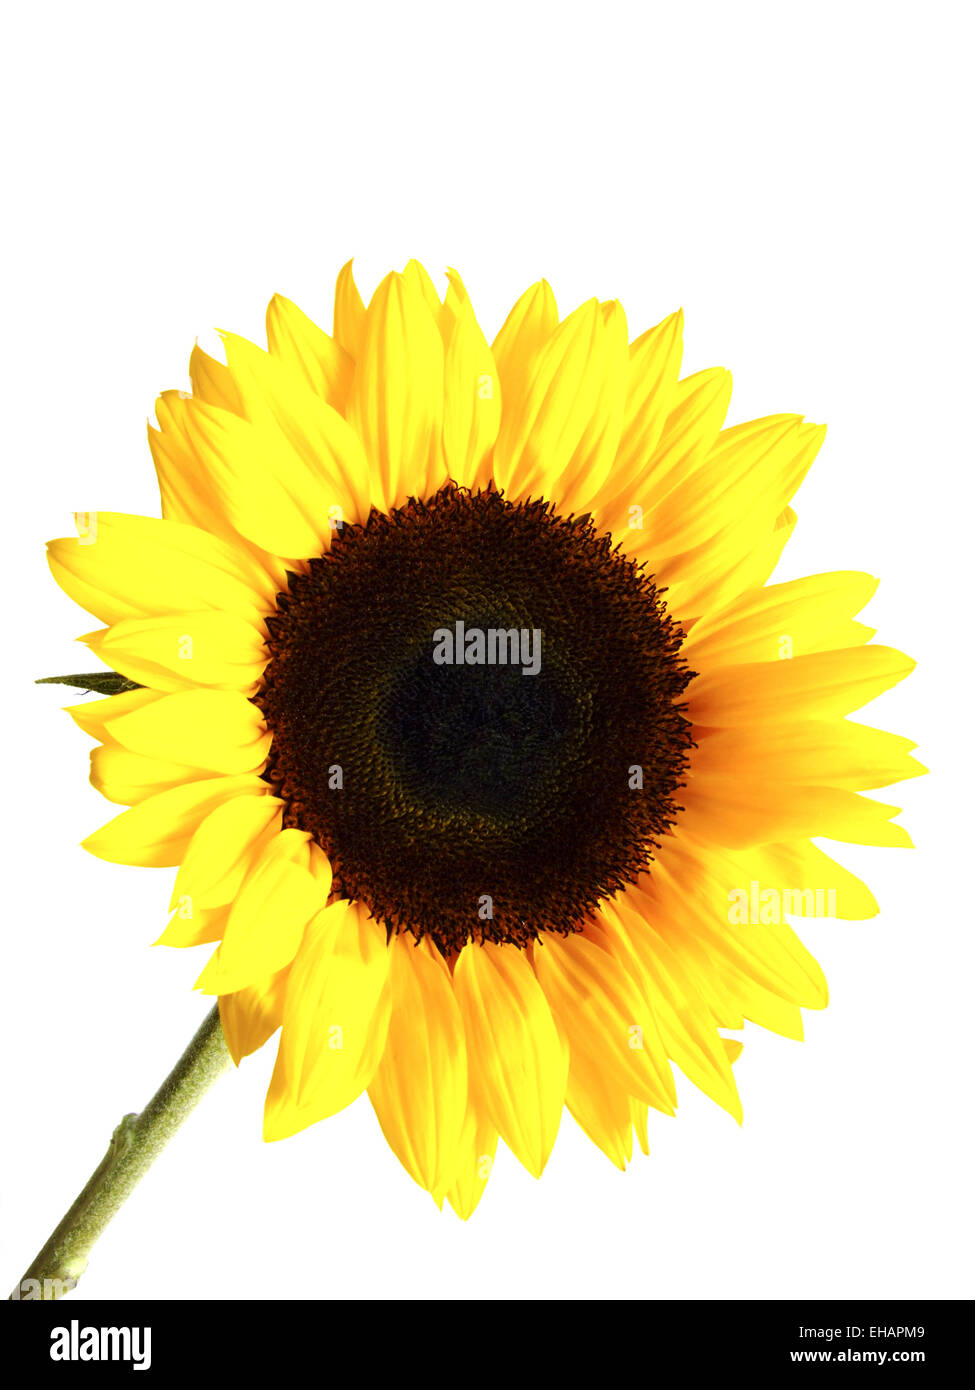 Sonnenblume / sunflower (Helianthus annuus) Stock Photo